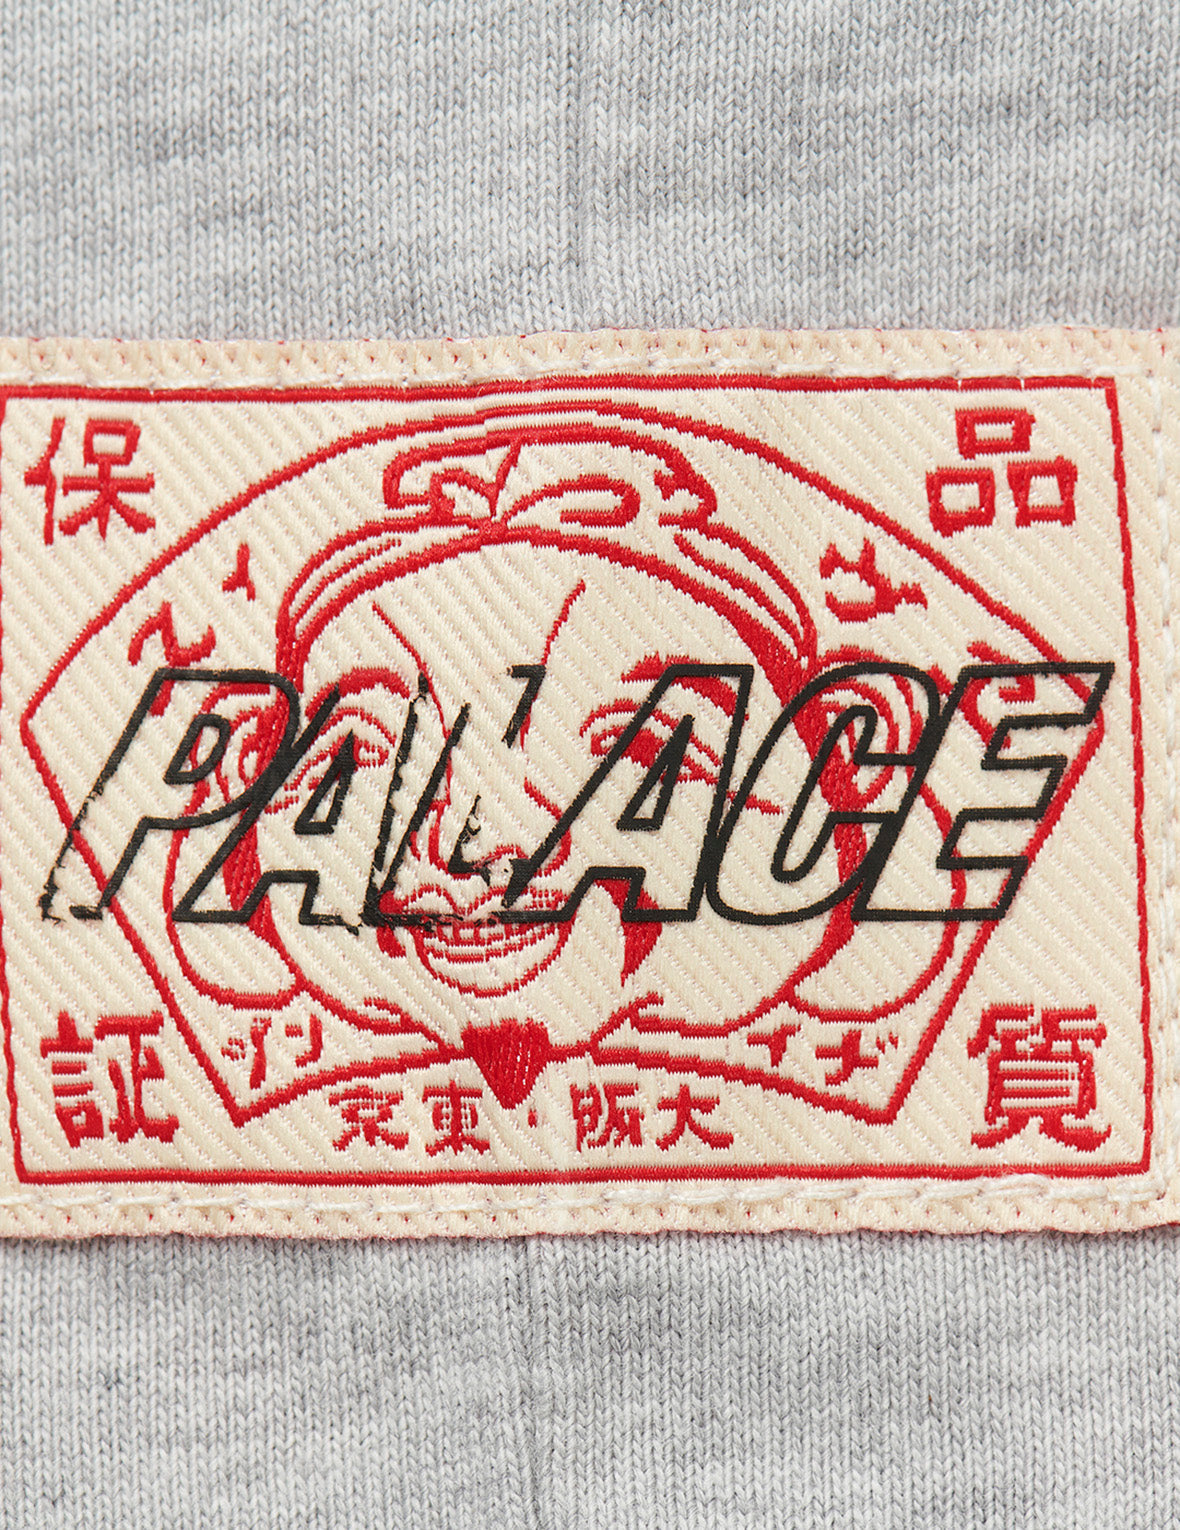 PALACE EVISU Contrasting Logo Print Regular Fit T-shirt